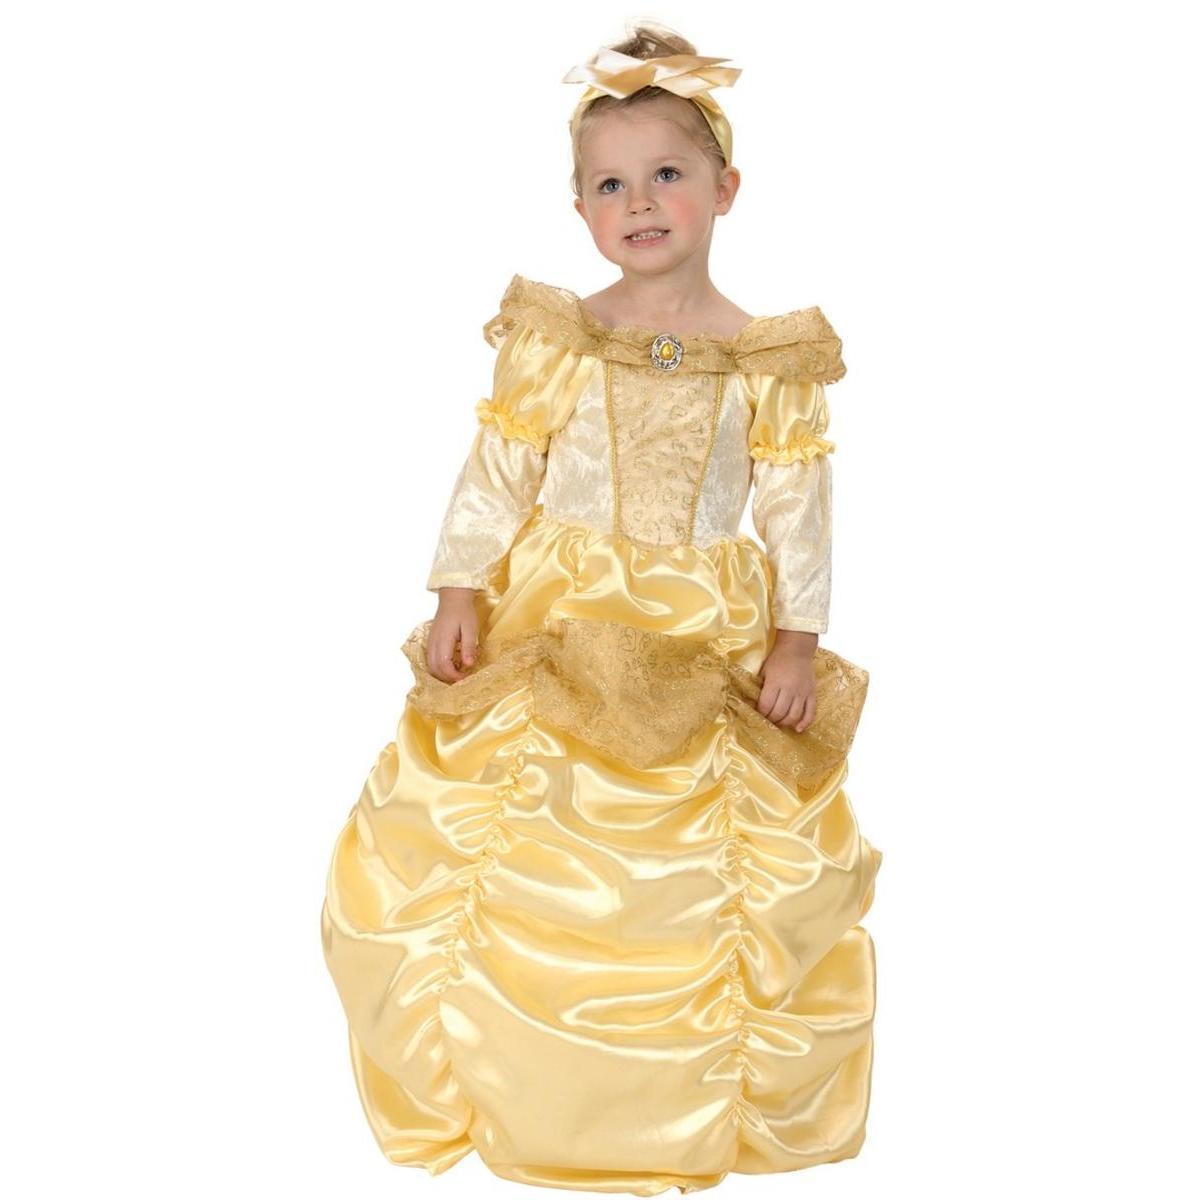 Costume de Belle princesse - Taille bébé (92 à 104 cm) - L 48 x H 3 x l 44 cm - Multicolore - PTIT CLOWN